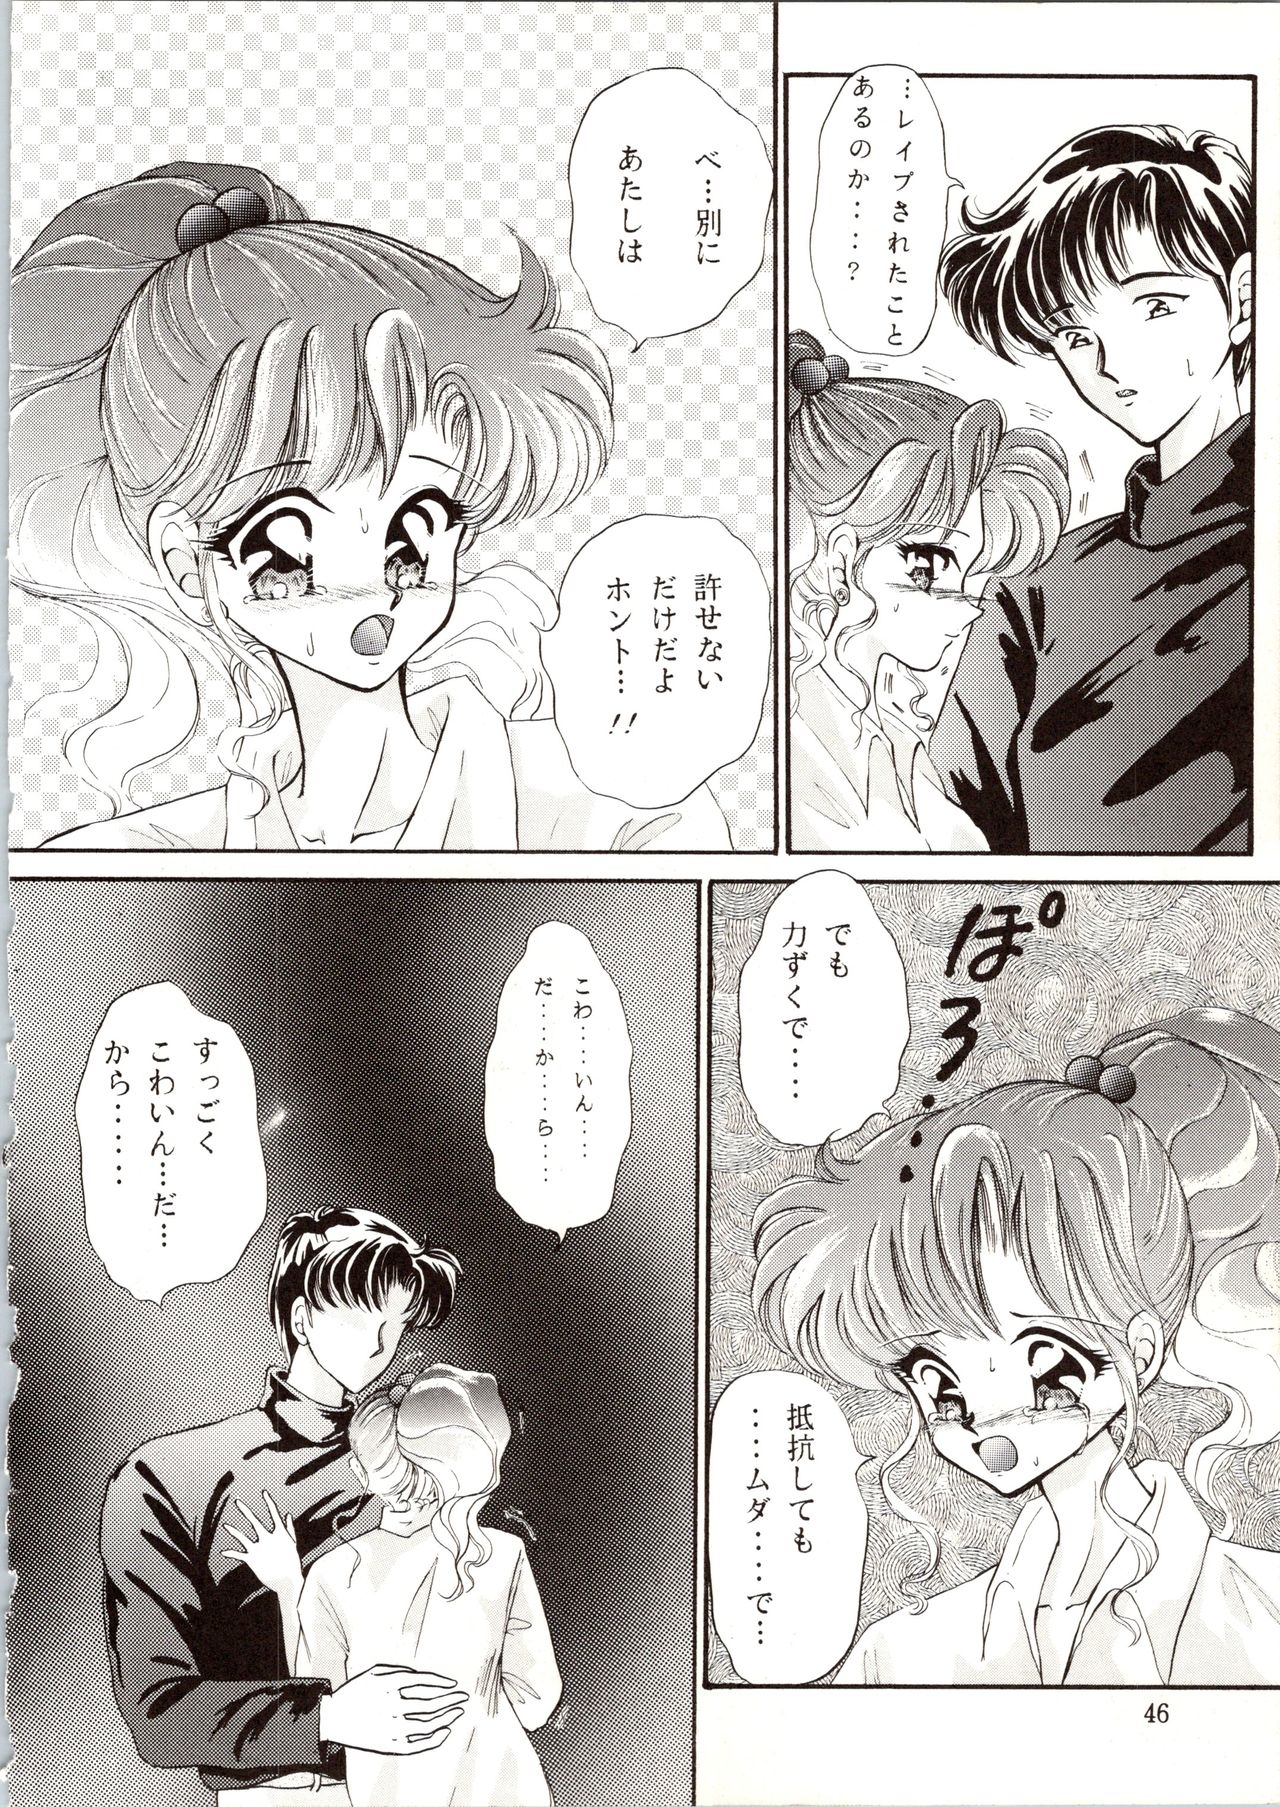 [P.P.P.P.C, TRAP (Matsuzaka Reia, Urano Mami)] Kangethu Hien Vol. 6 (Bishoujo Senshi Sailor Moon) page 46 full